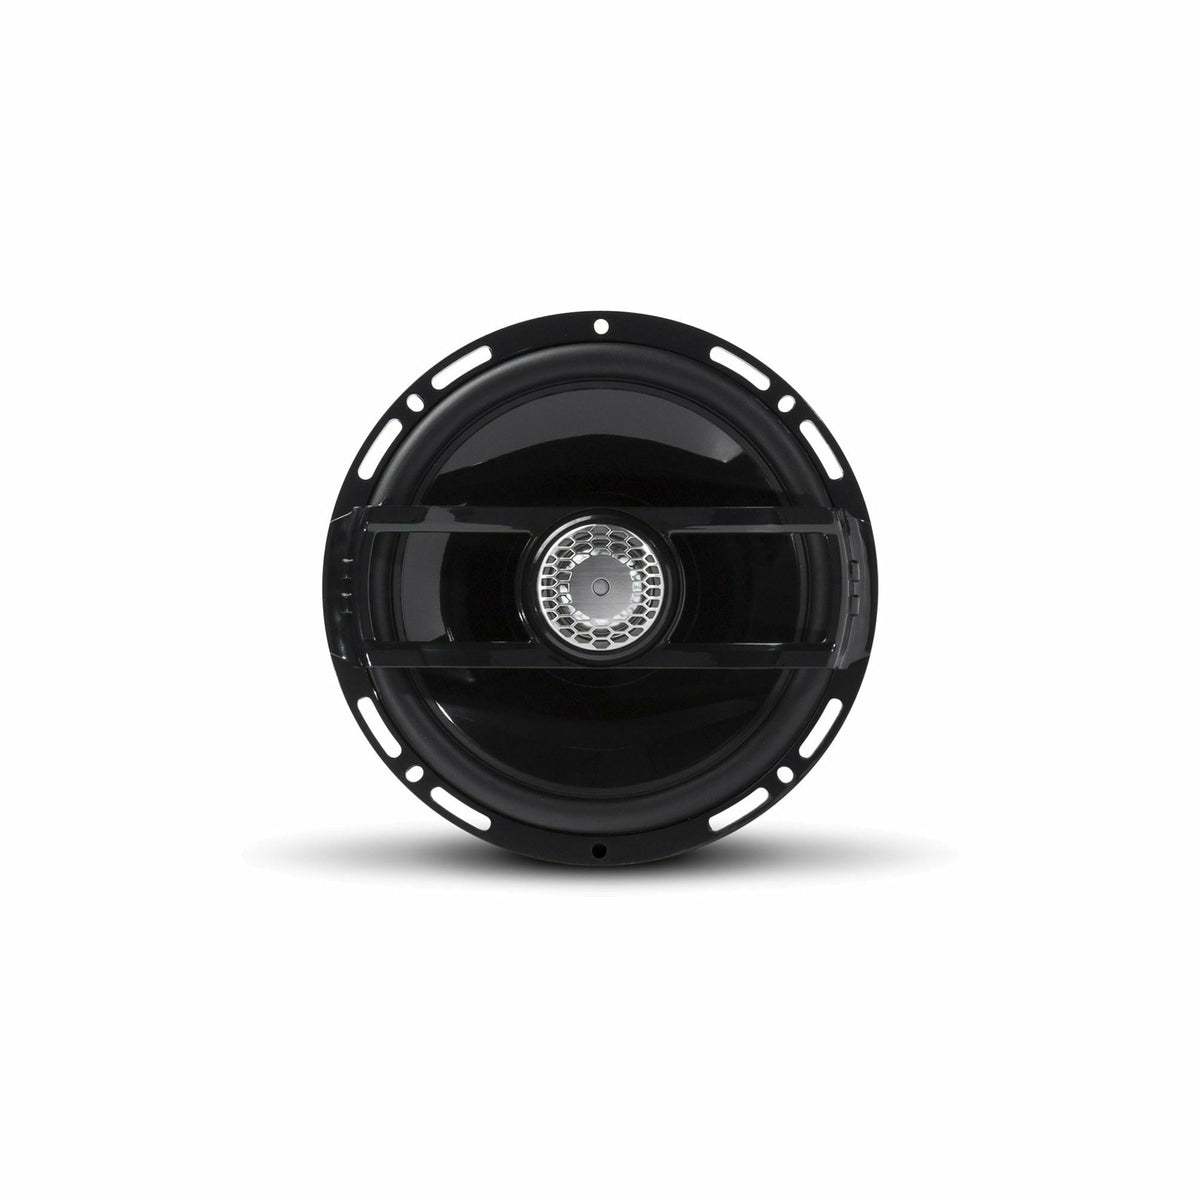 Rockford Fosgate Punch Marine 6.5" Full Range Speakers